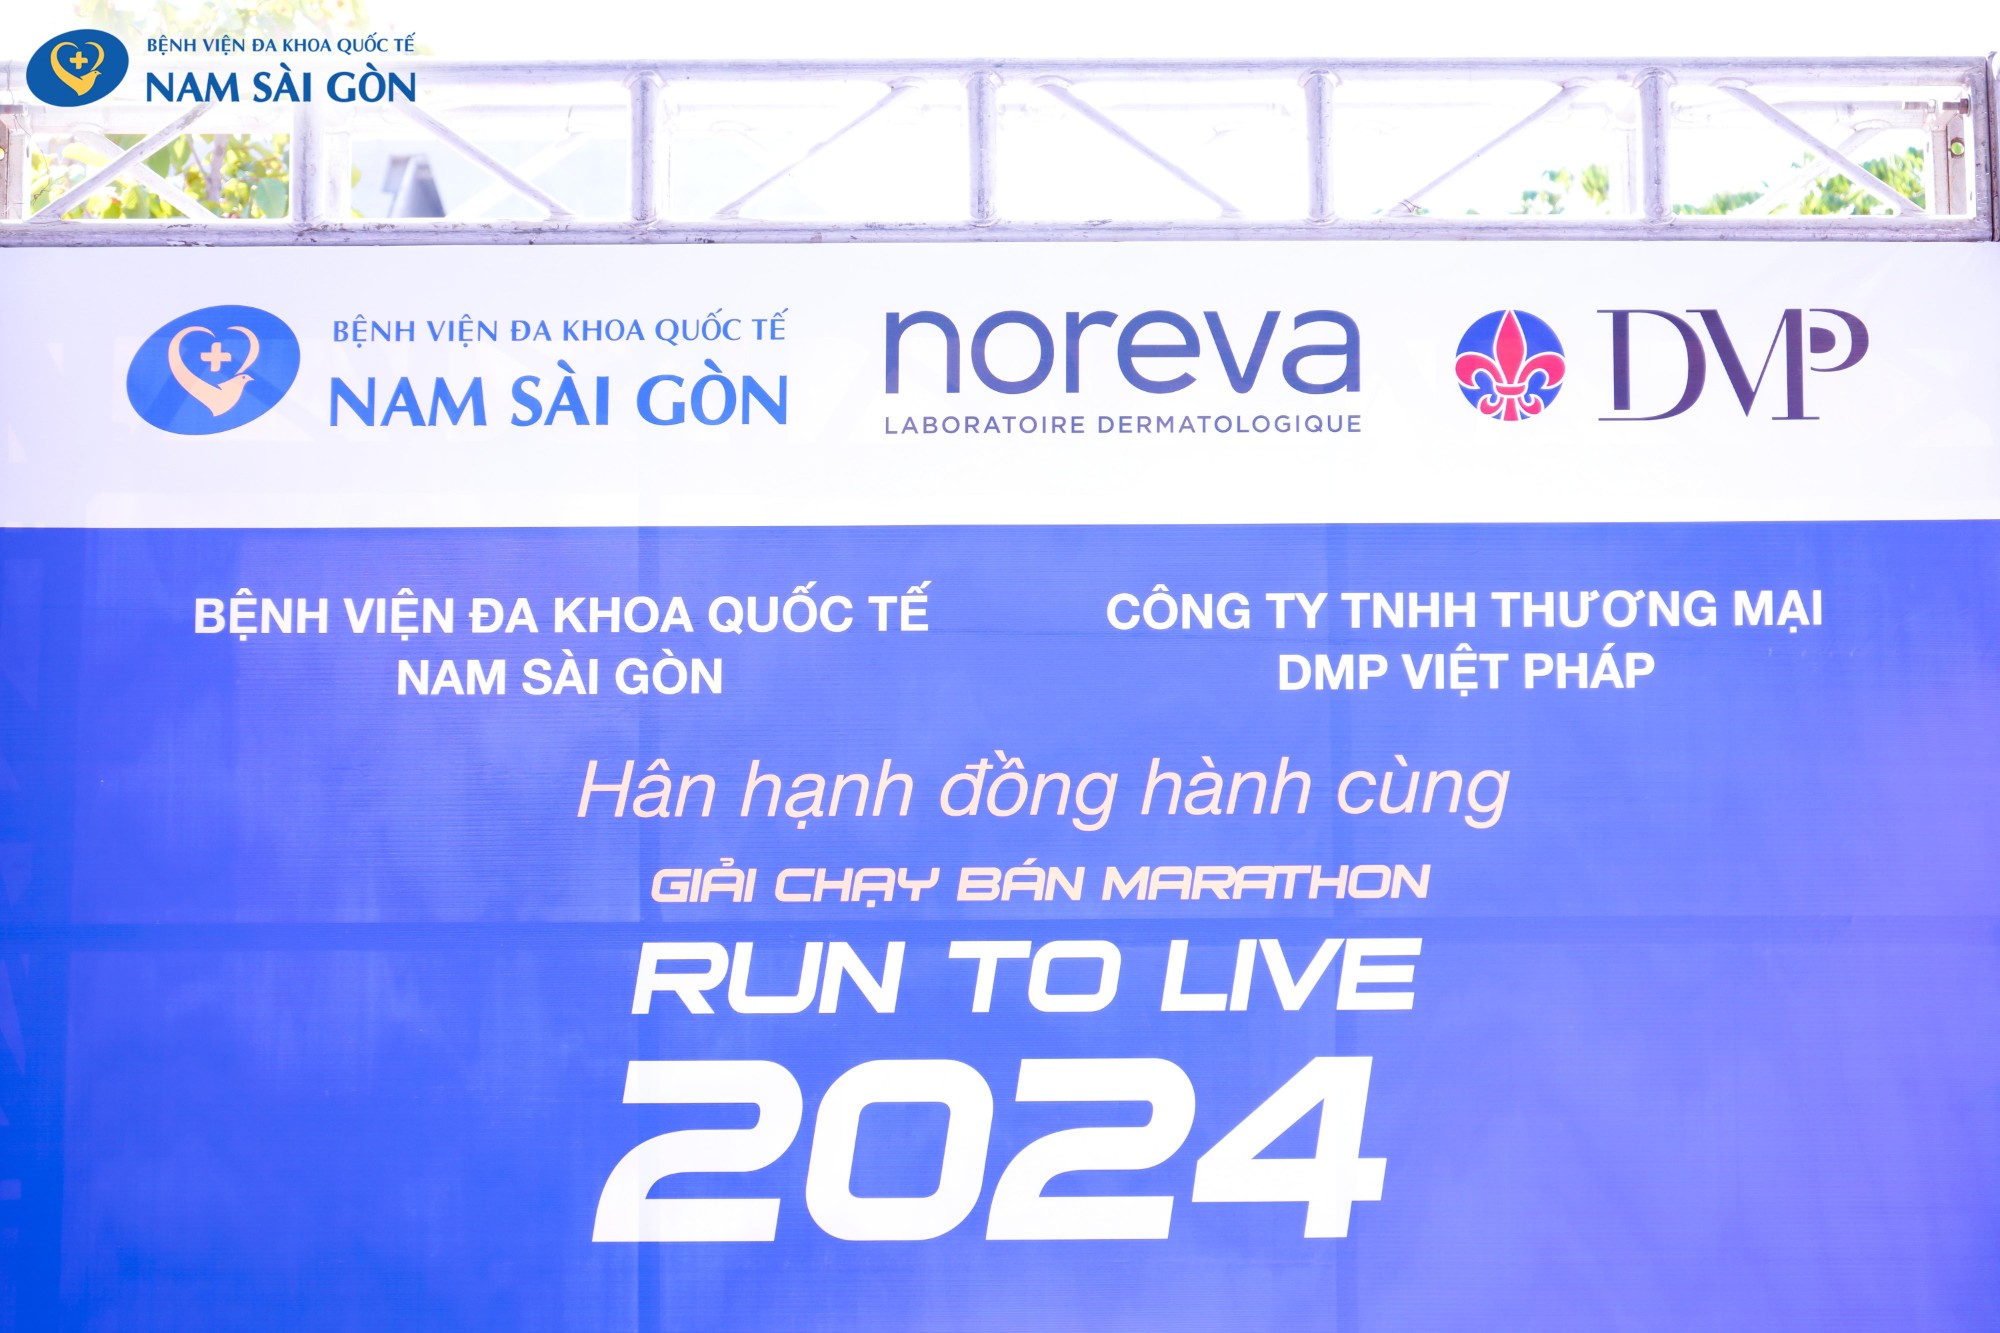 ĐỒNG HÀNH CÙNG GIẢI CHẠY RUN TO LIVE 2024